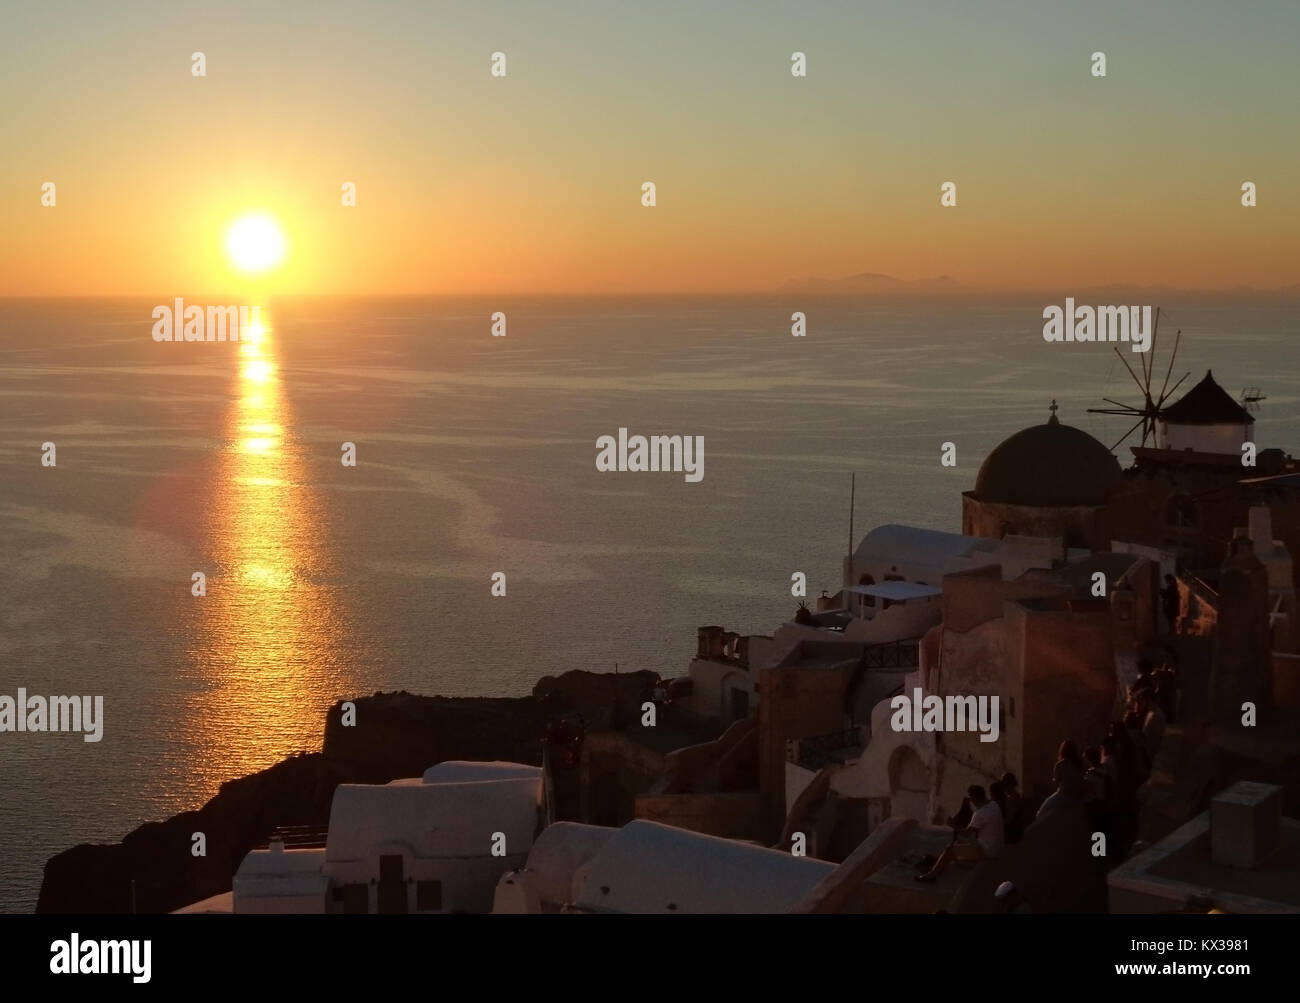 Breathtaking Sunset at Oia Village, Santorini Island of Greece Stock Photo